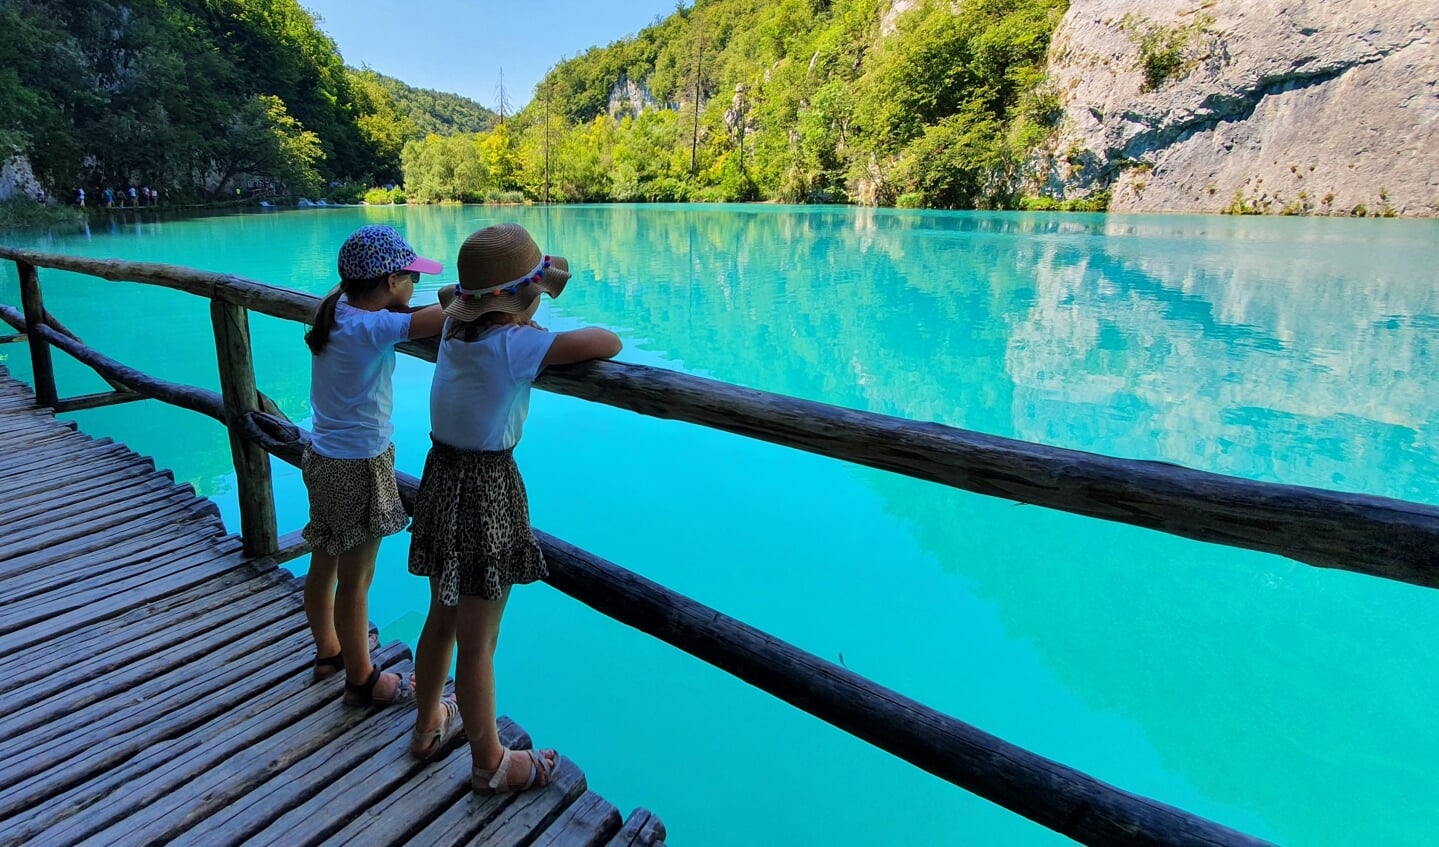 ,,Deze foto is genomen bij de Plitvice meren in Kroatië, waar je over een reeks looppaden bijna op het water loopt langs de 90 watervallen en 16 diepblauw gekleurde meren. In de zomer, ondanks z'n locatie, een toeristische trekpleister, maar zeker de moeite waard. Bij 35 graden en met bijna 10 kilometer in de benen verdien je regelmatig een tussenstop, gelukkig altijd met een mooi uitzicht.'' Ingestuurd door Tiemen de Haij.